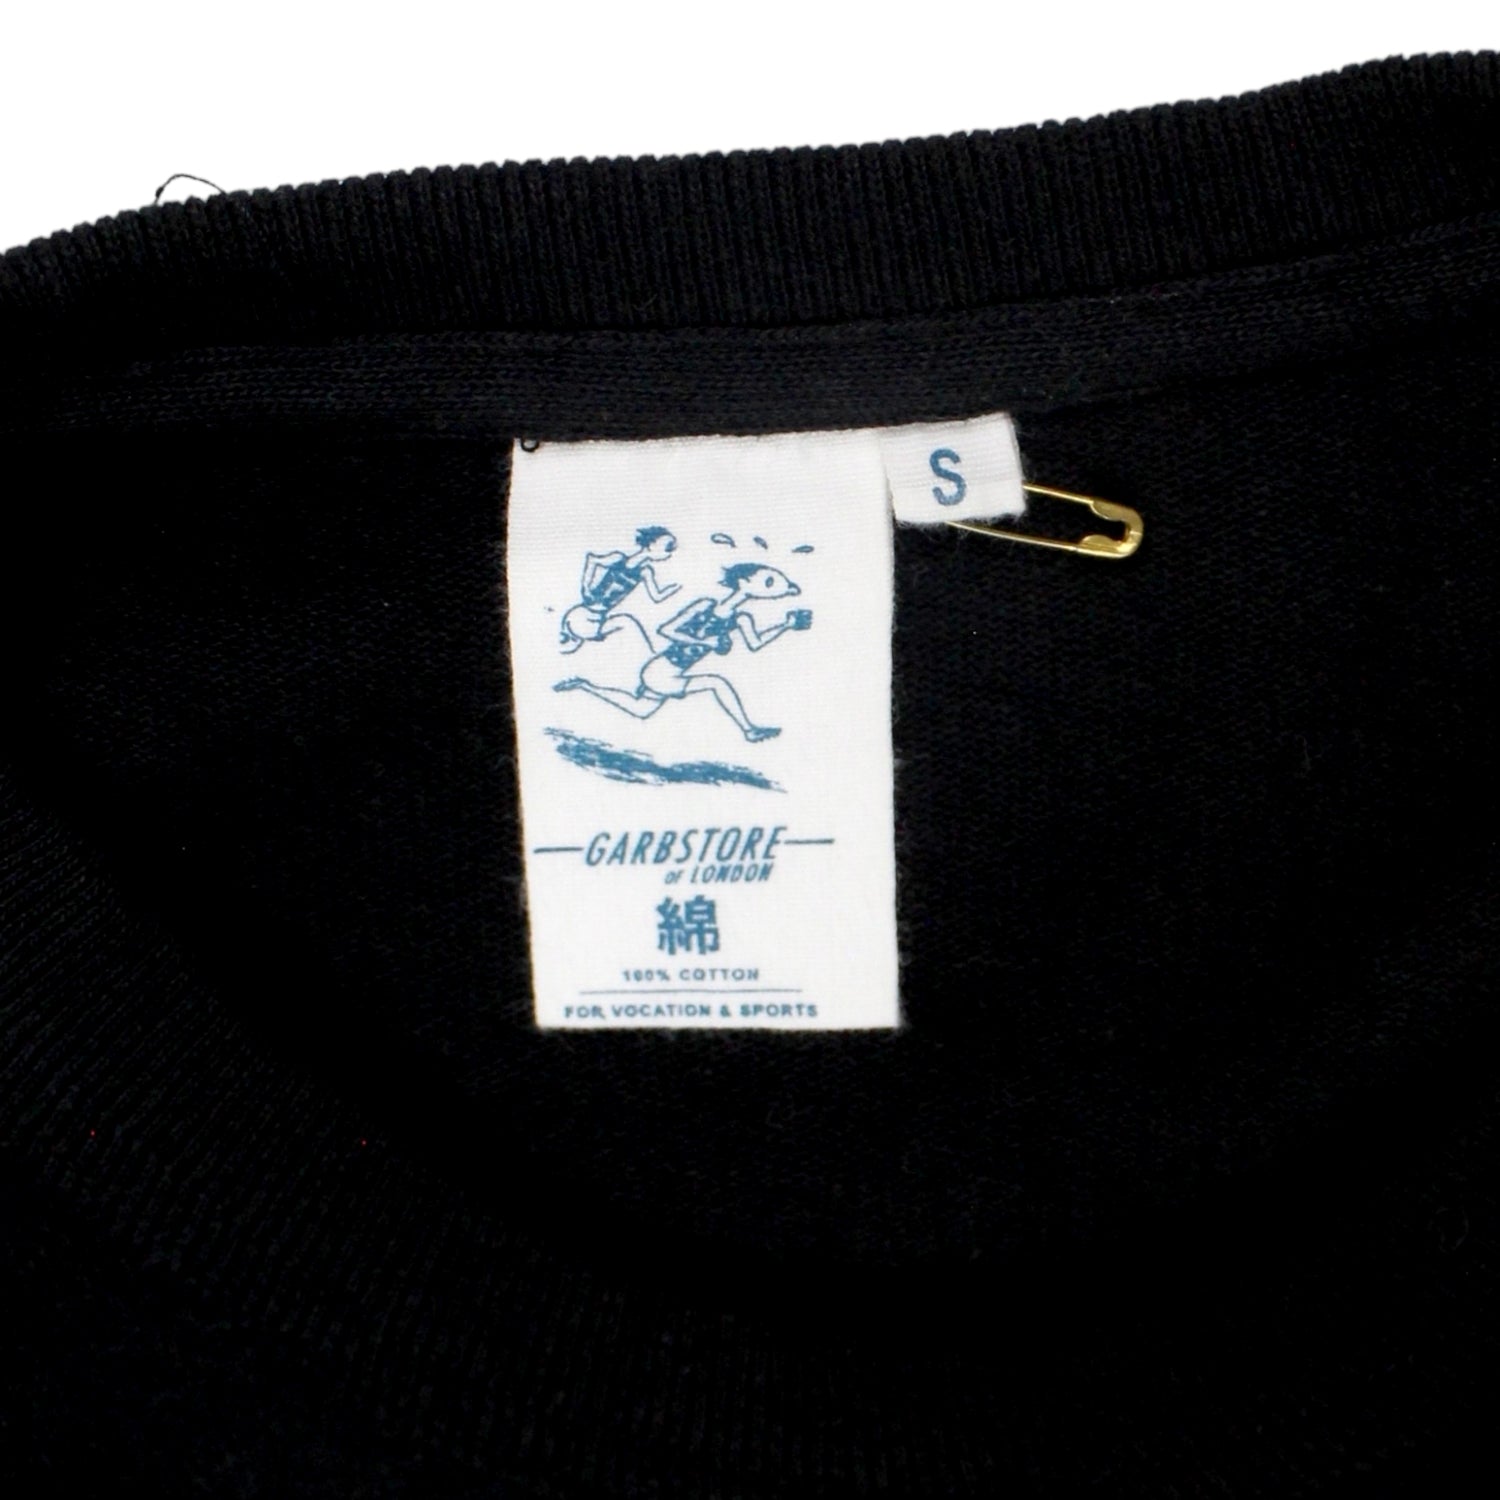 Garbstore Black Jersey Sweatshirt